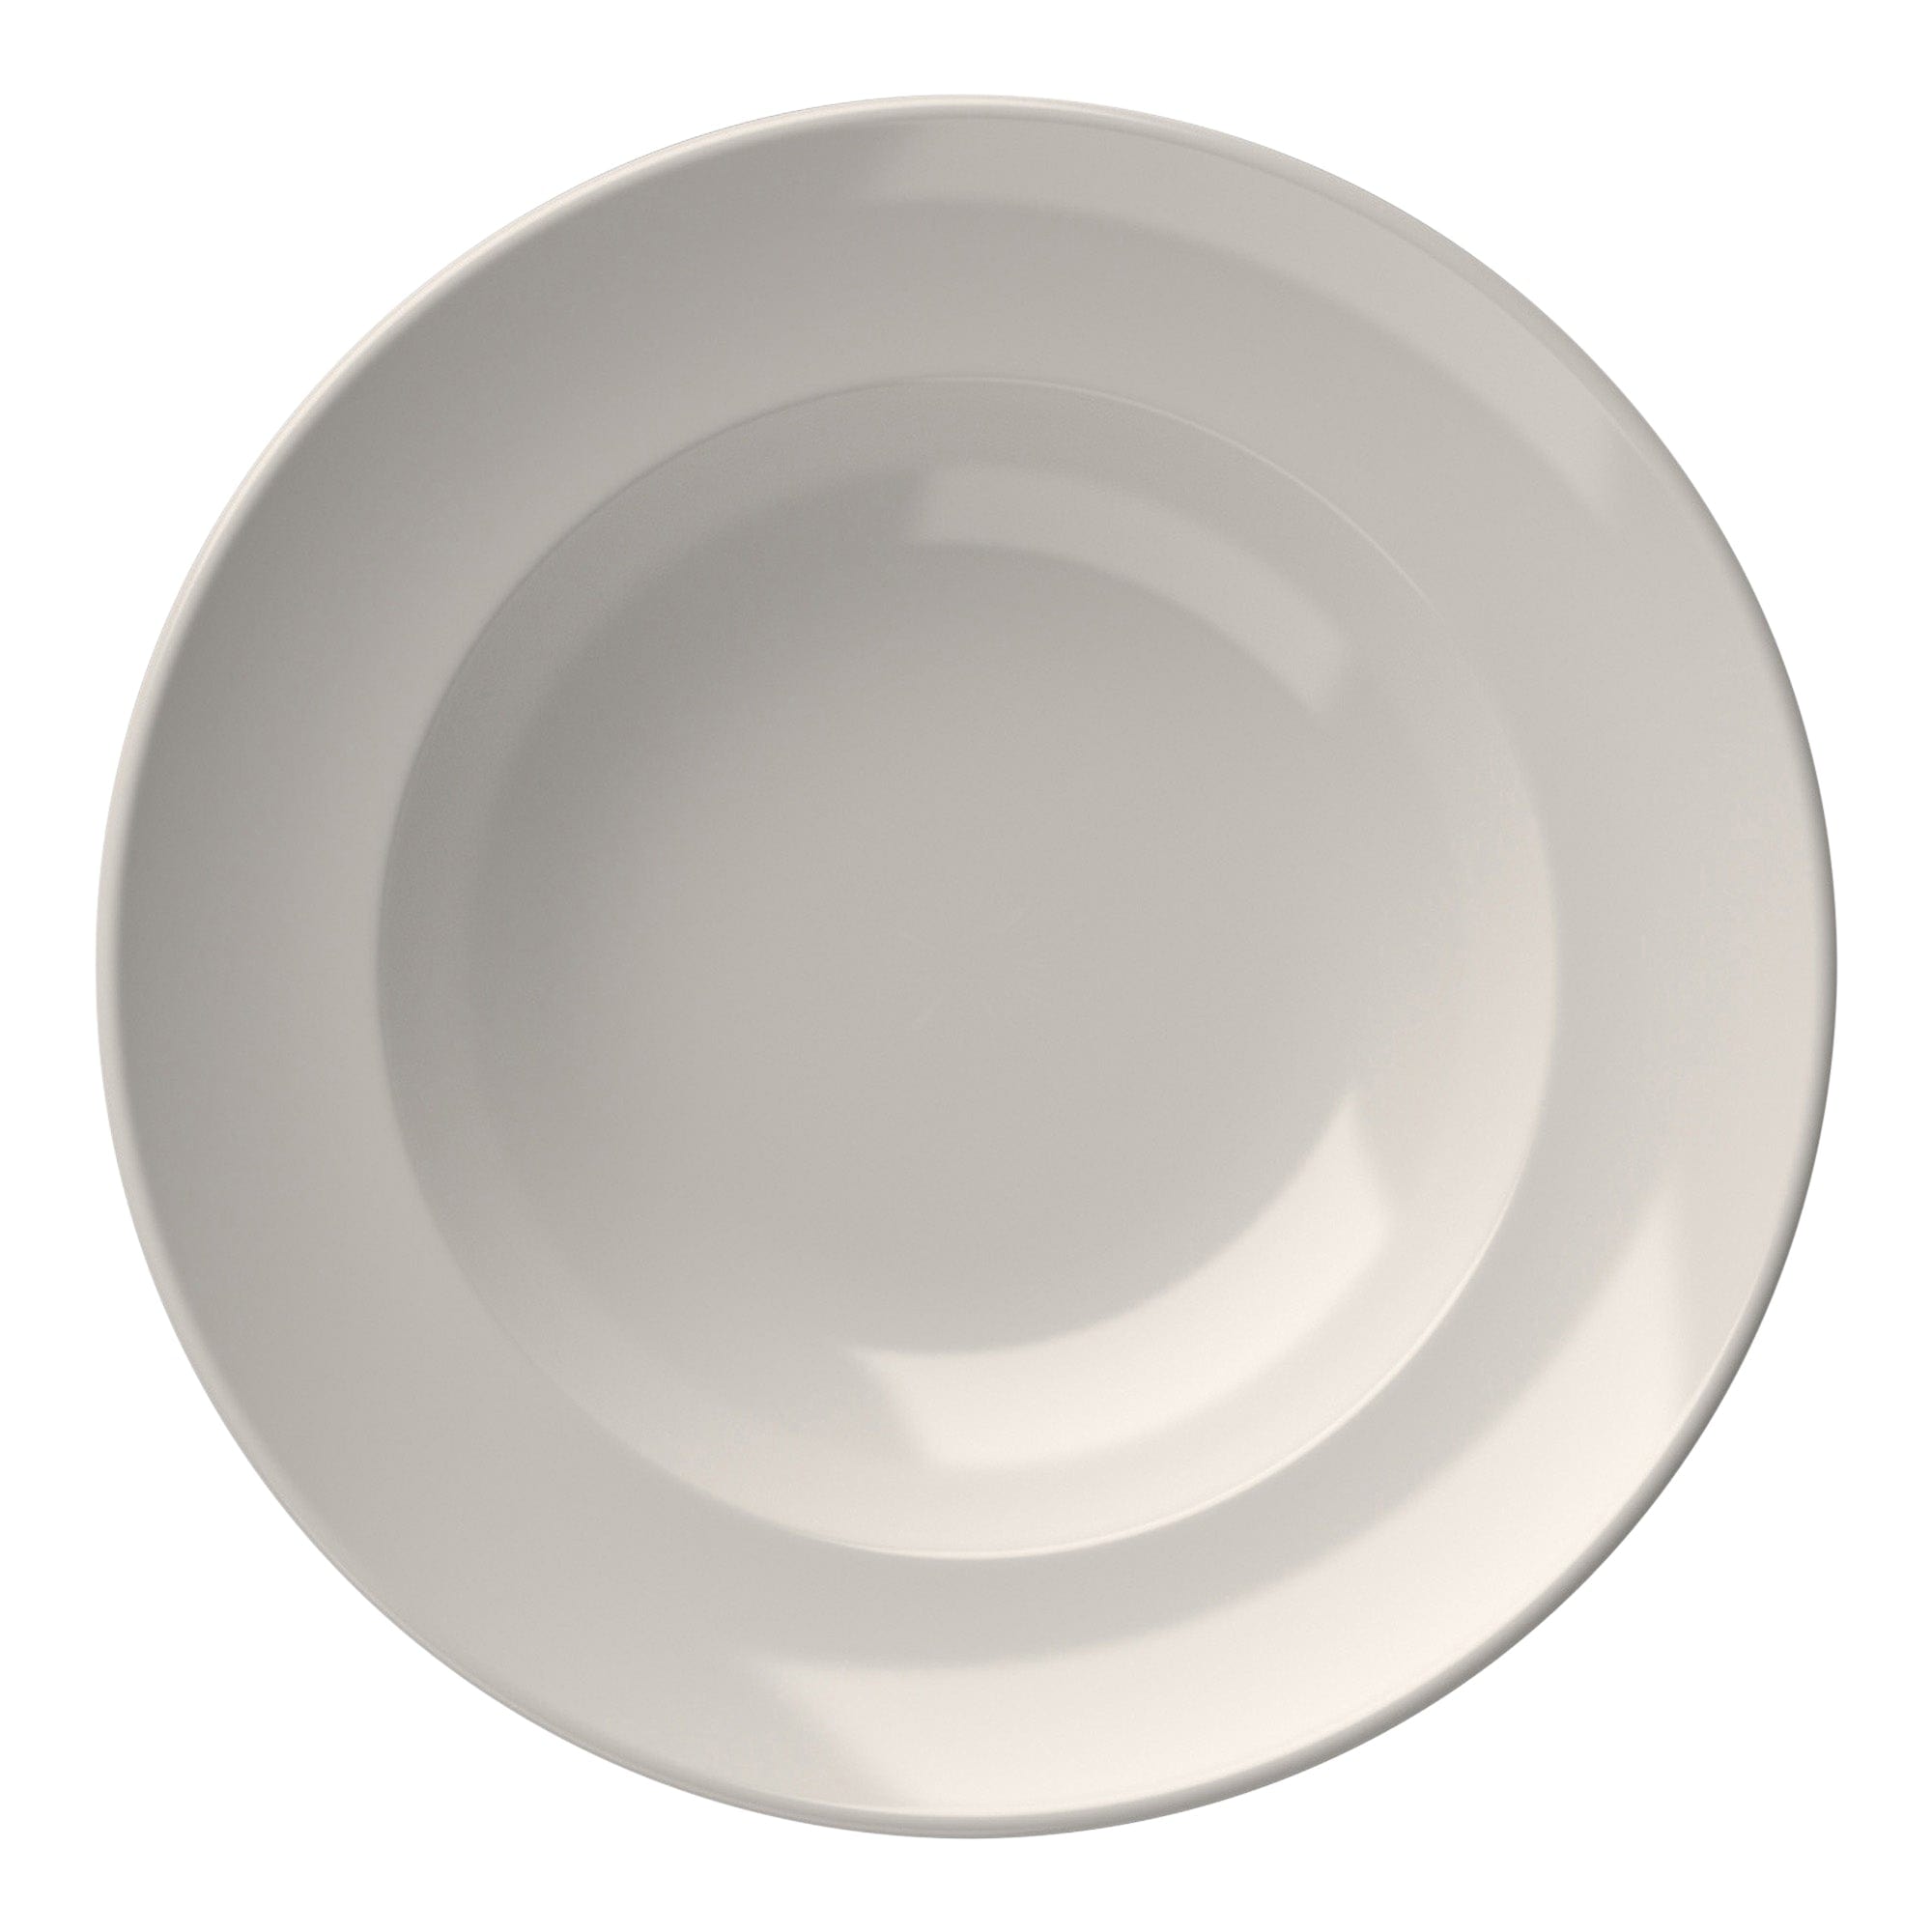 Miro Porcelain Deep Plate 9.9"